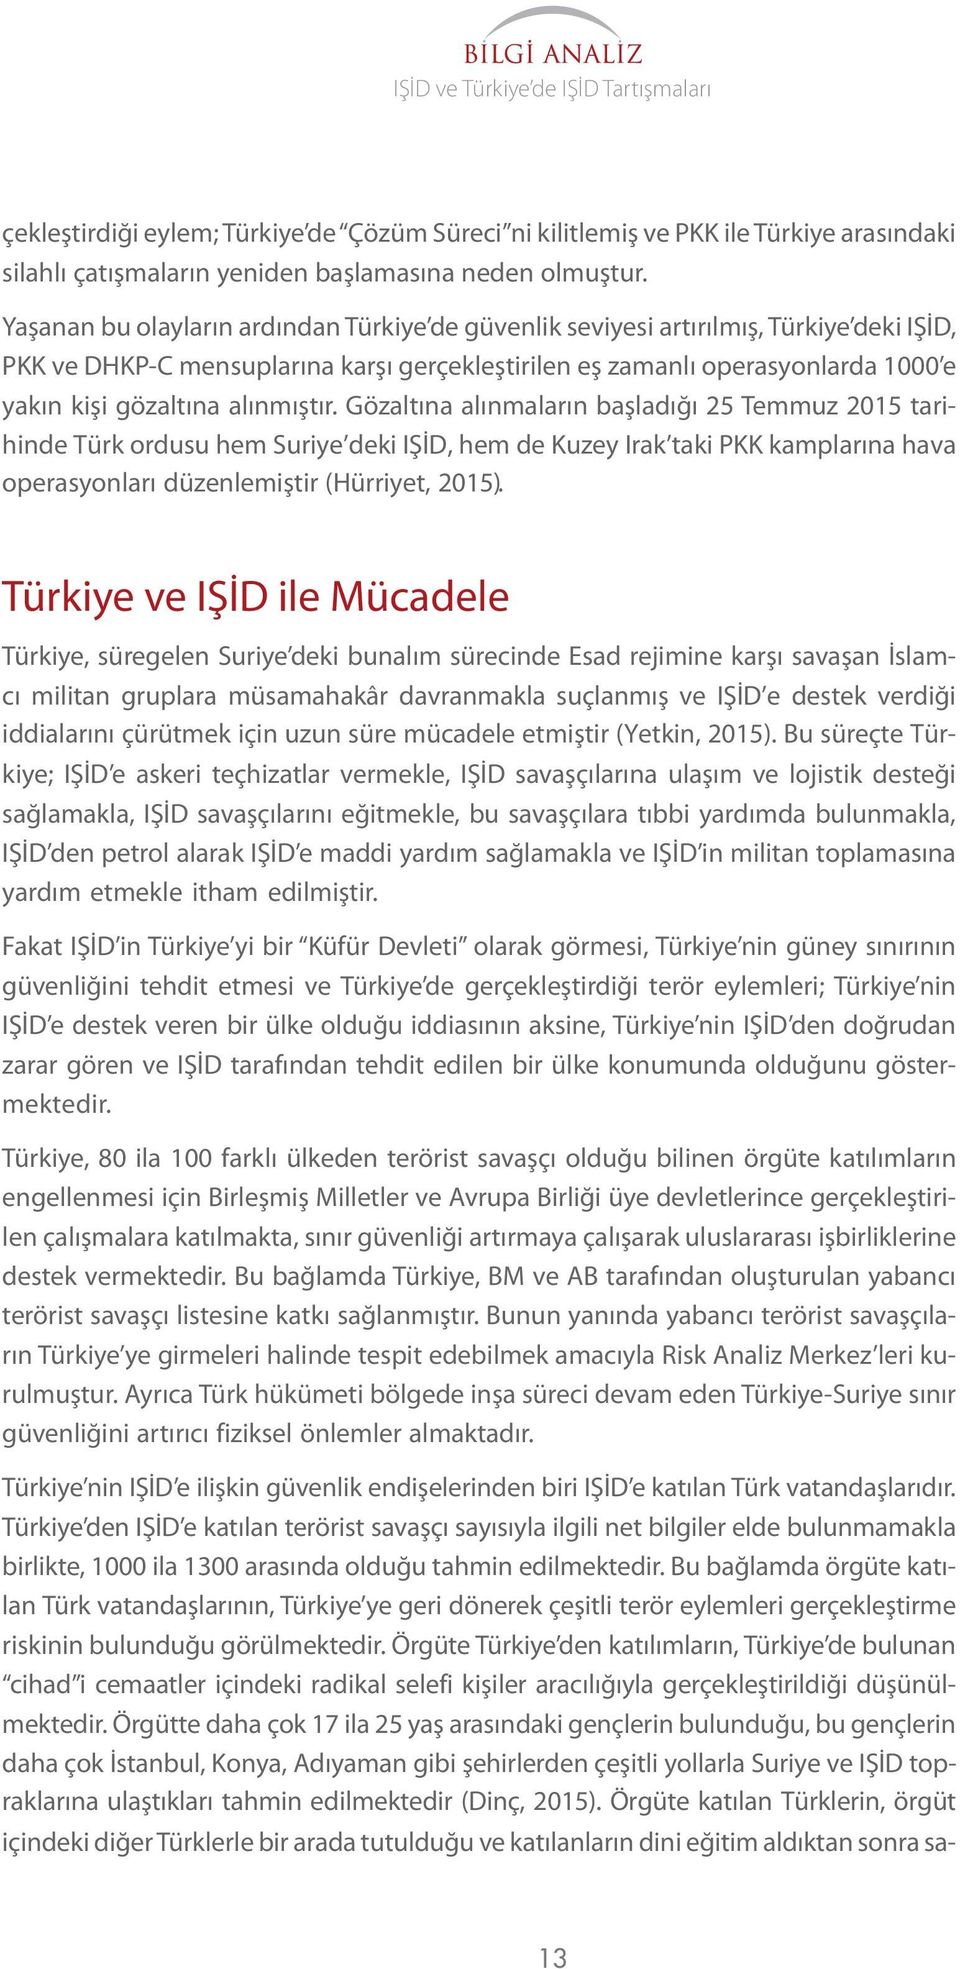 alınmıştır. Gözaltına alınmaların başladığı 25 Temmuz tarihinde Türk ordusu hem Suriye deki IŞİD, hem de Kuzey Irak taki PKK kamplarına hava operasyonları düzenlemiştir (Hürriyet, ).